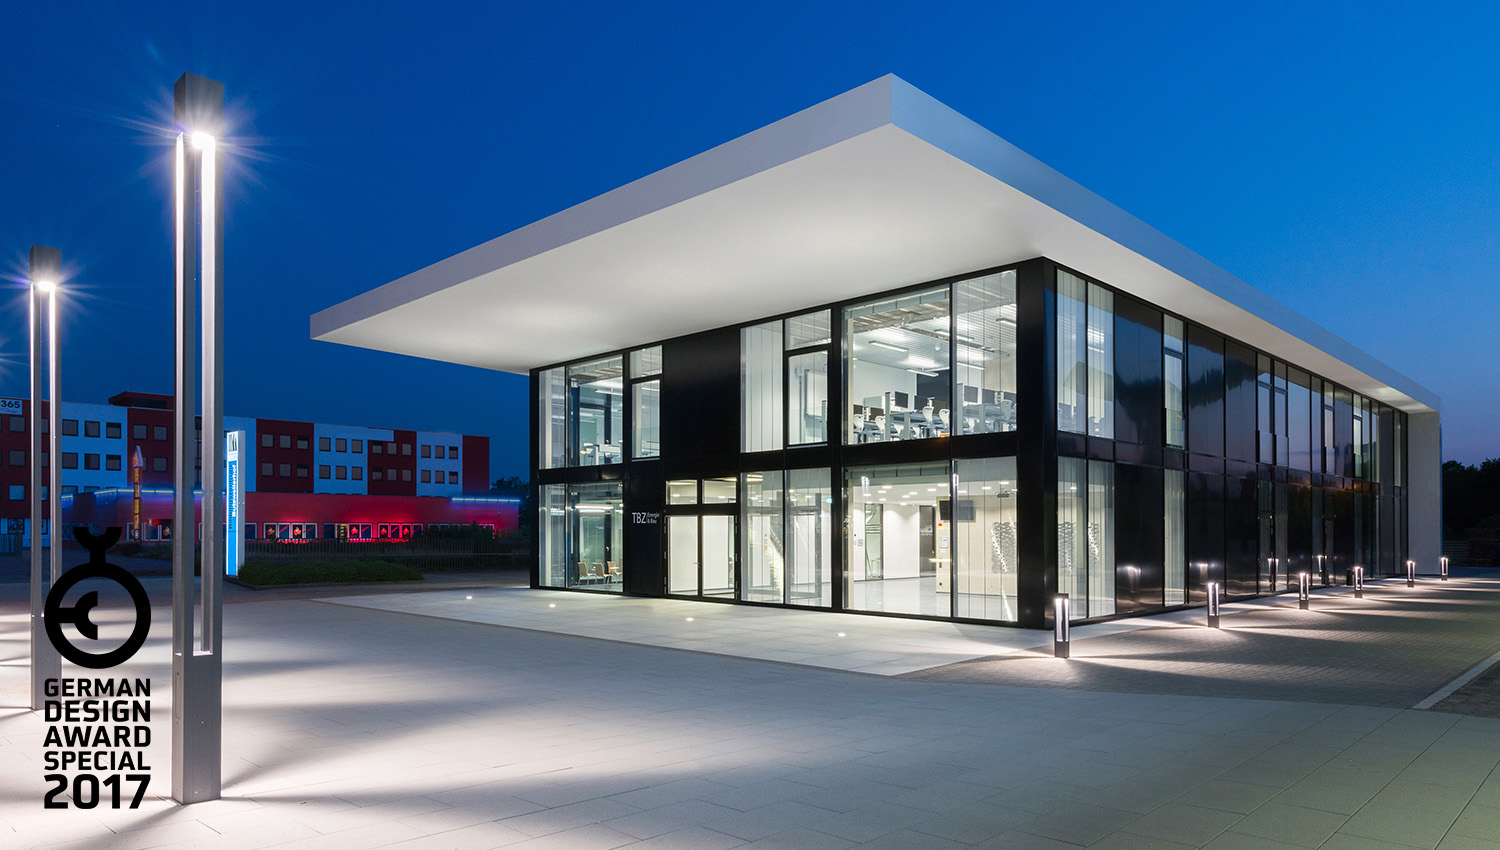 German Design Award 2017, TBZ Bildungszentrum Handwerkskammer zu Köln, SSP Architekten Bochum